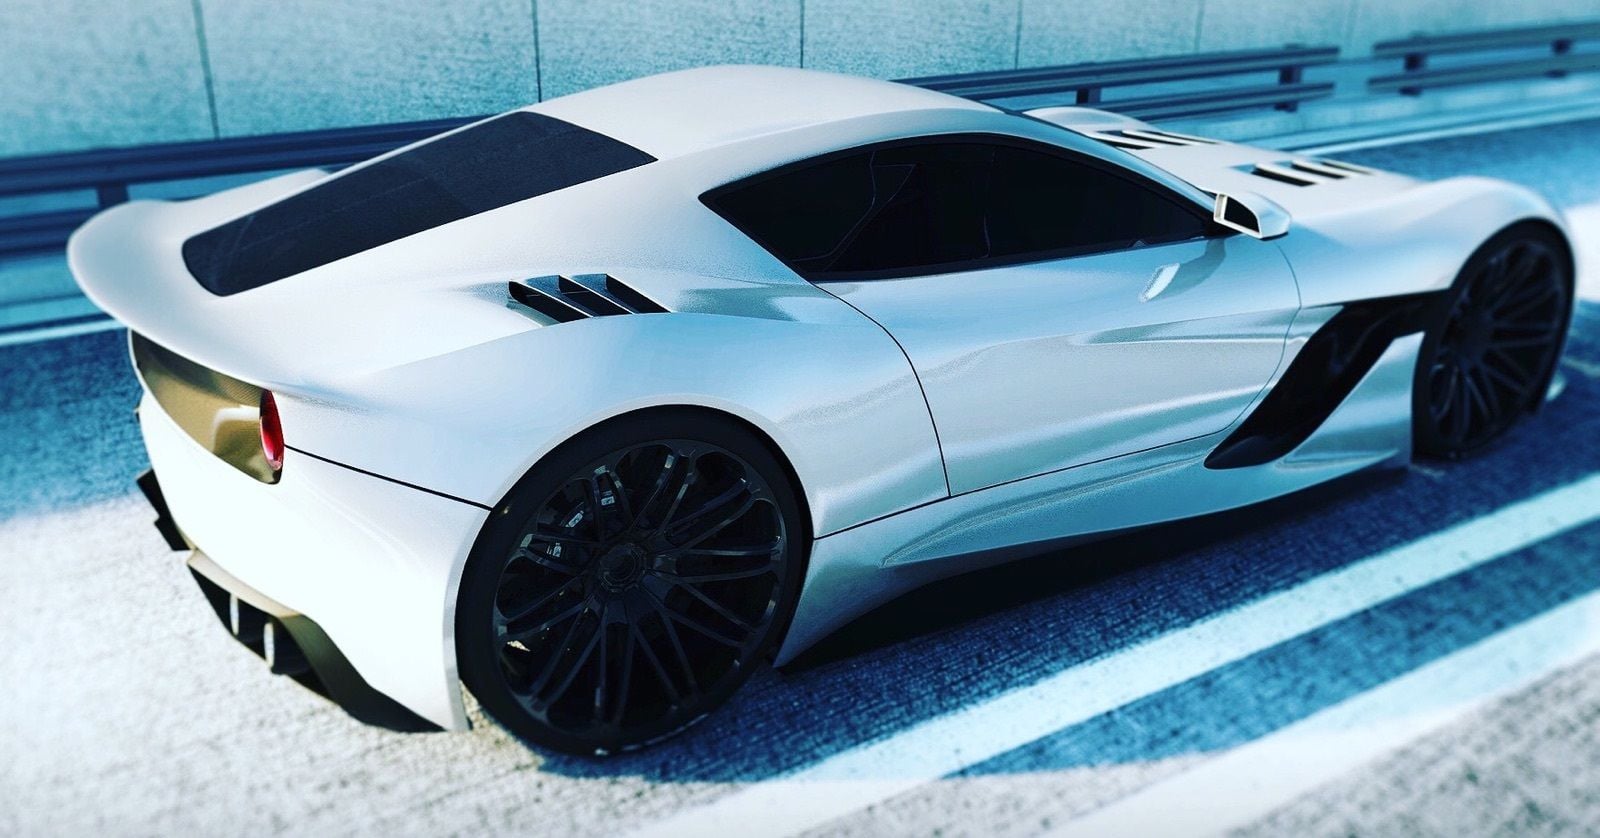 2020 Mid Engine Corvette (Concept Design) - Page 3 - CorvetteForum - Chevrolet ...1600 x 838